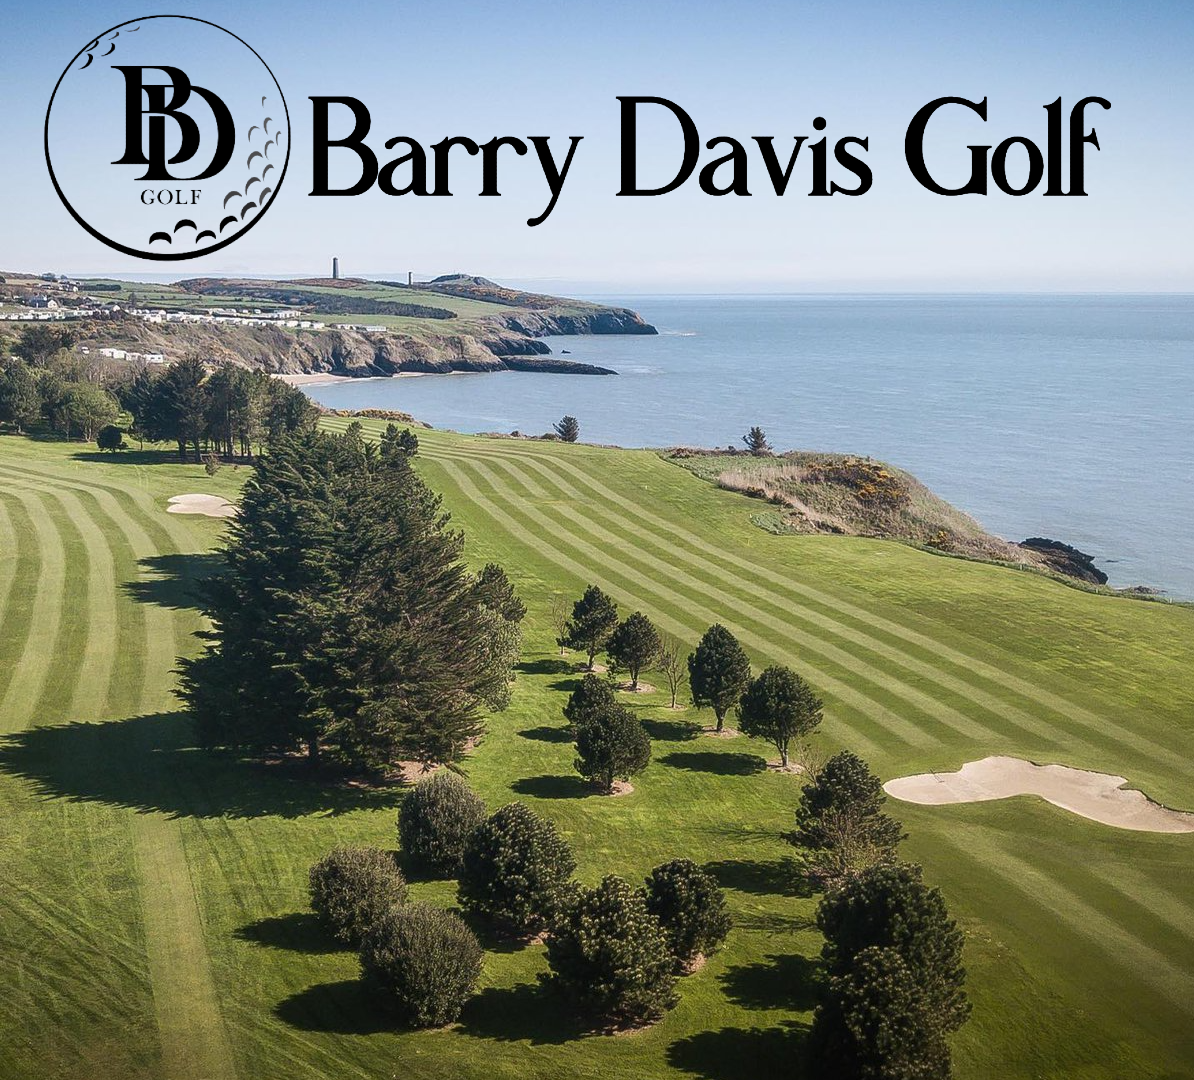 Barry Davis Golf